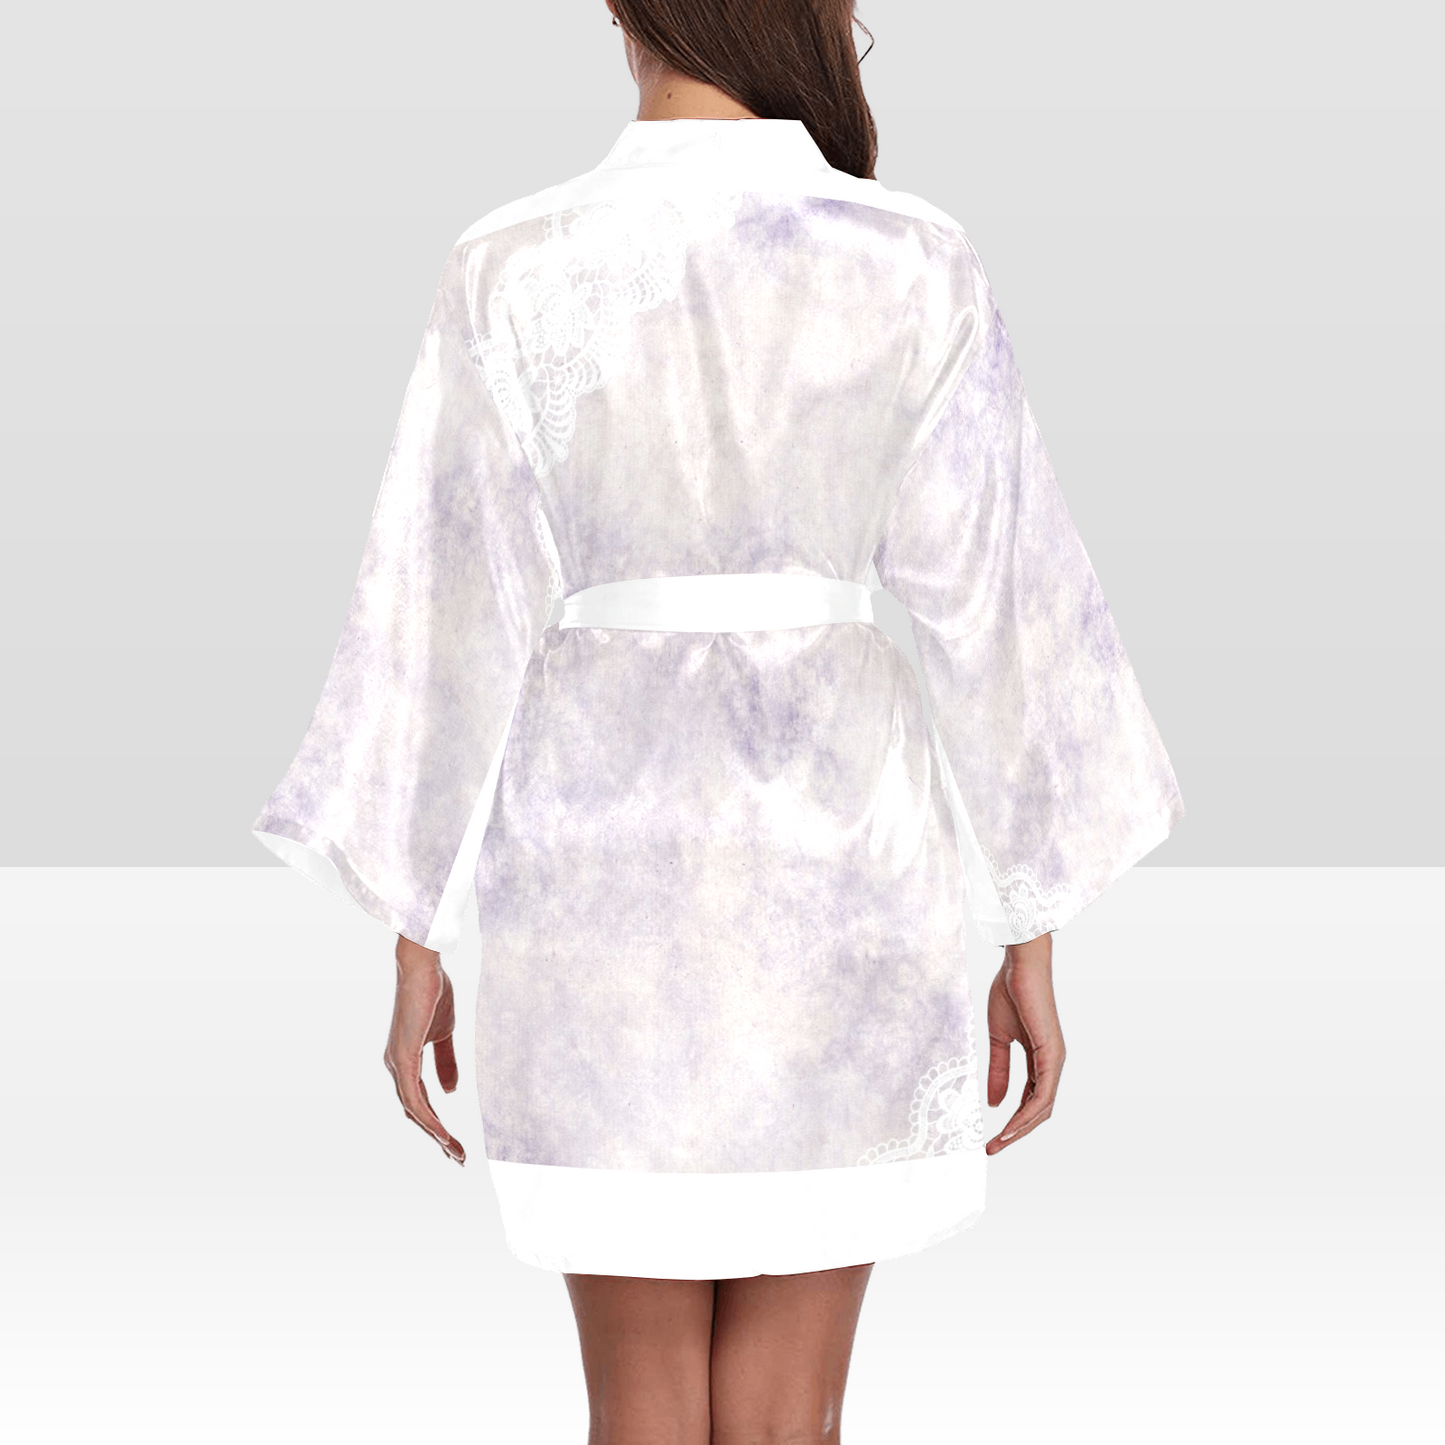 Victorian Lace Kimono Robe, Black or White Trim, Sizes XS to 2XL, Design 40